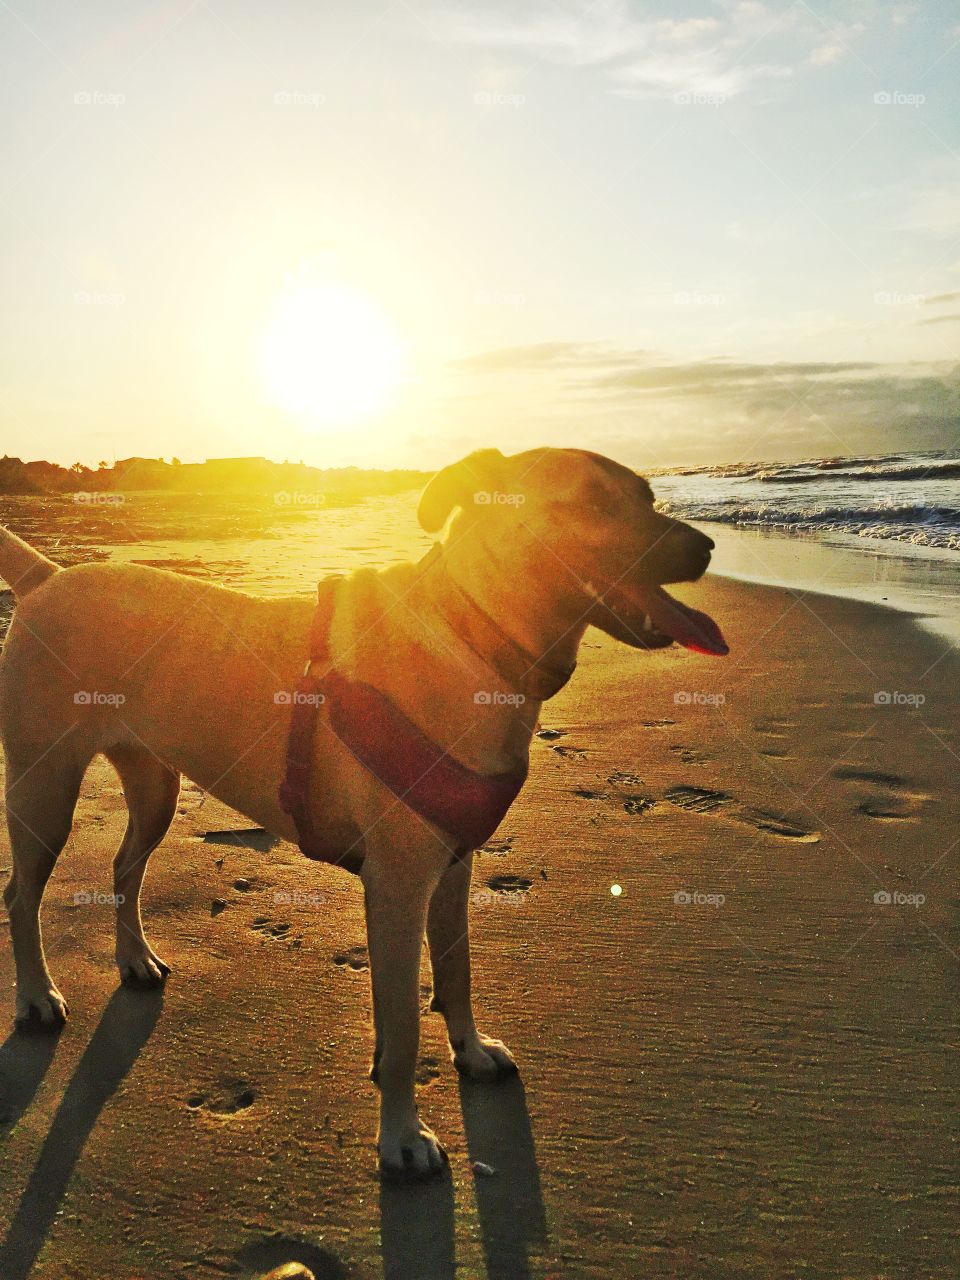 Dog on beach 